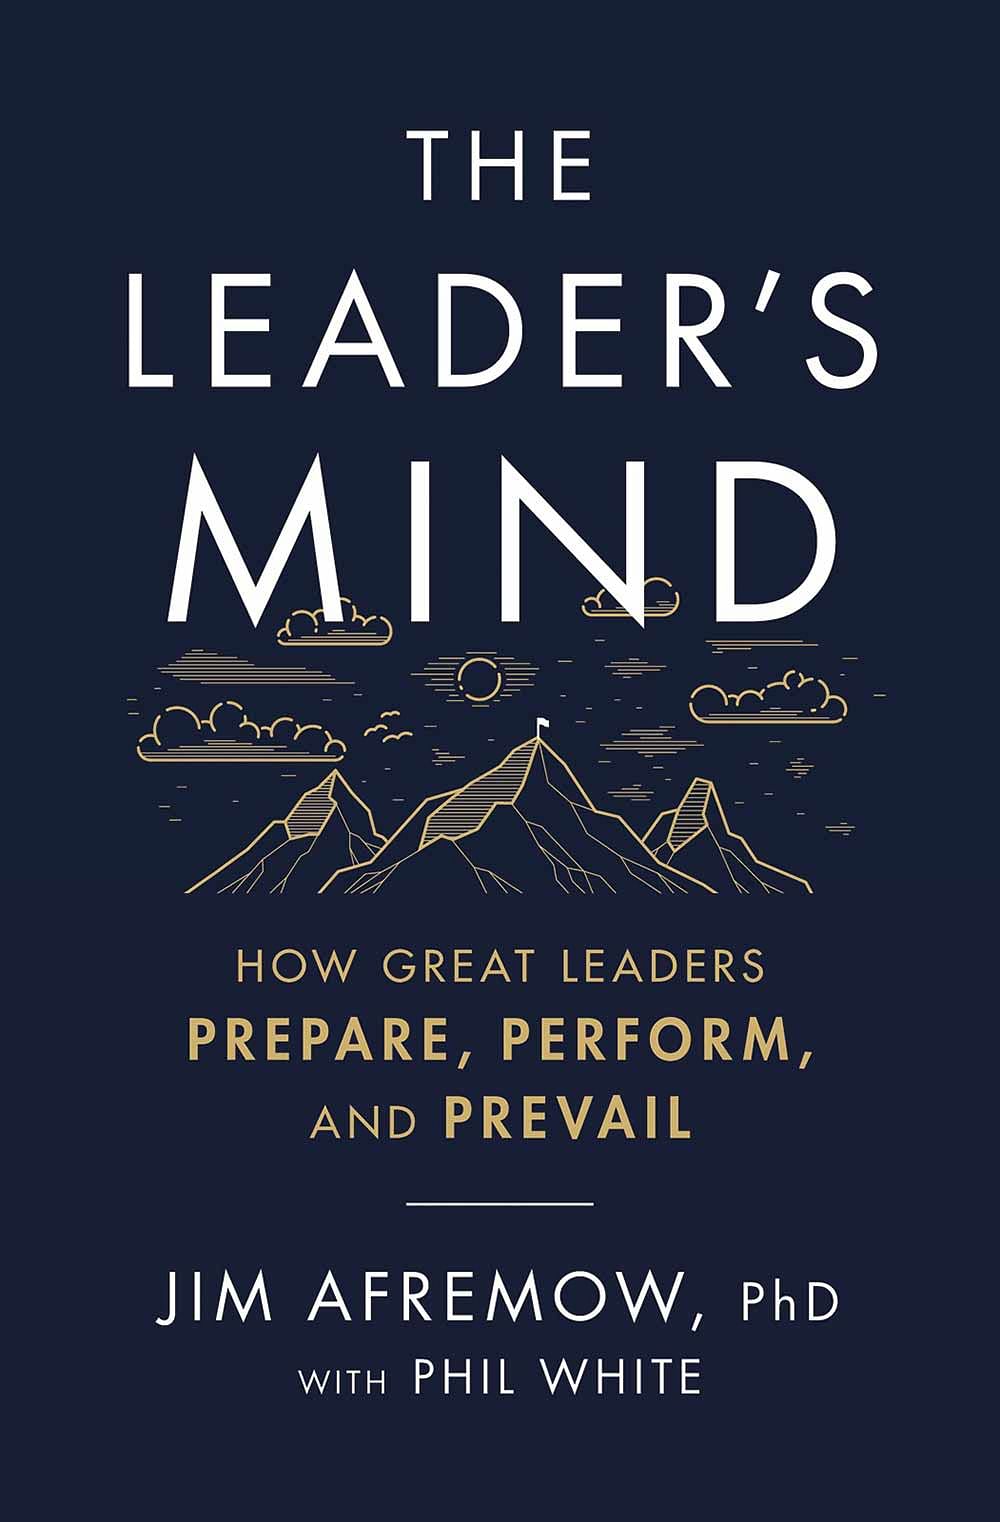 புத்தகத்தின் பெயர்: The Leader’s Mind
ஆசிரியர்: Jim Afremow PhD, Phil White
பதிப்பகம்:‎ HarperCollins Leadership 
